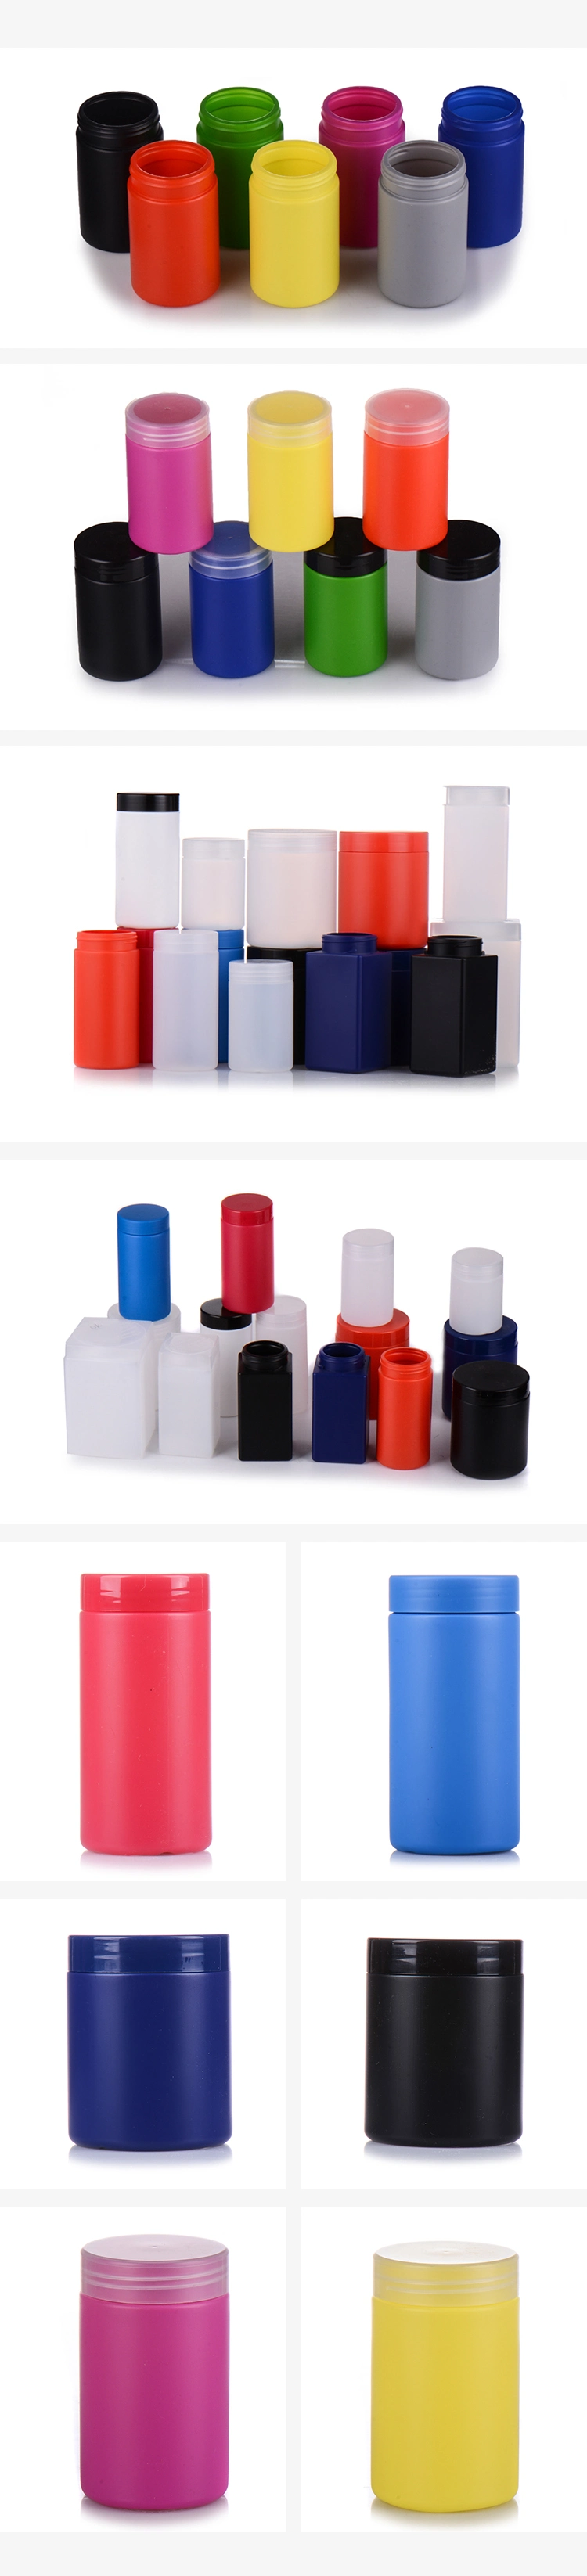 Professionalblack Plastic Bottles for Nutrition Powder